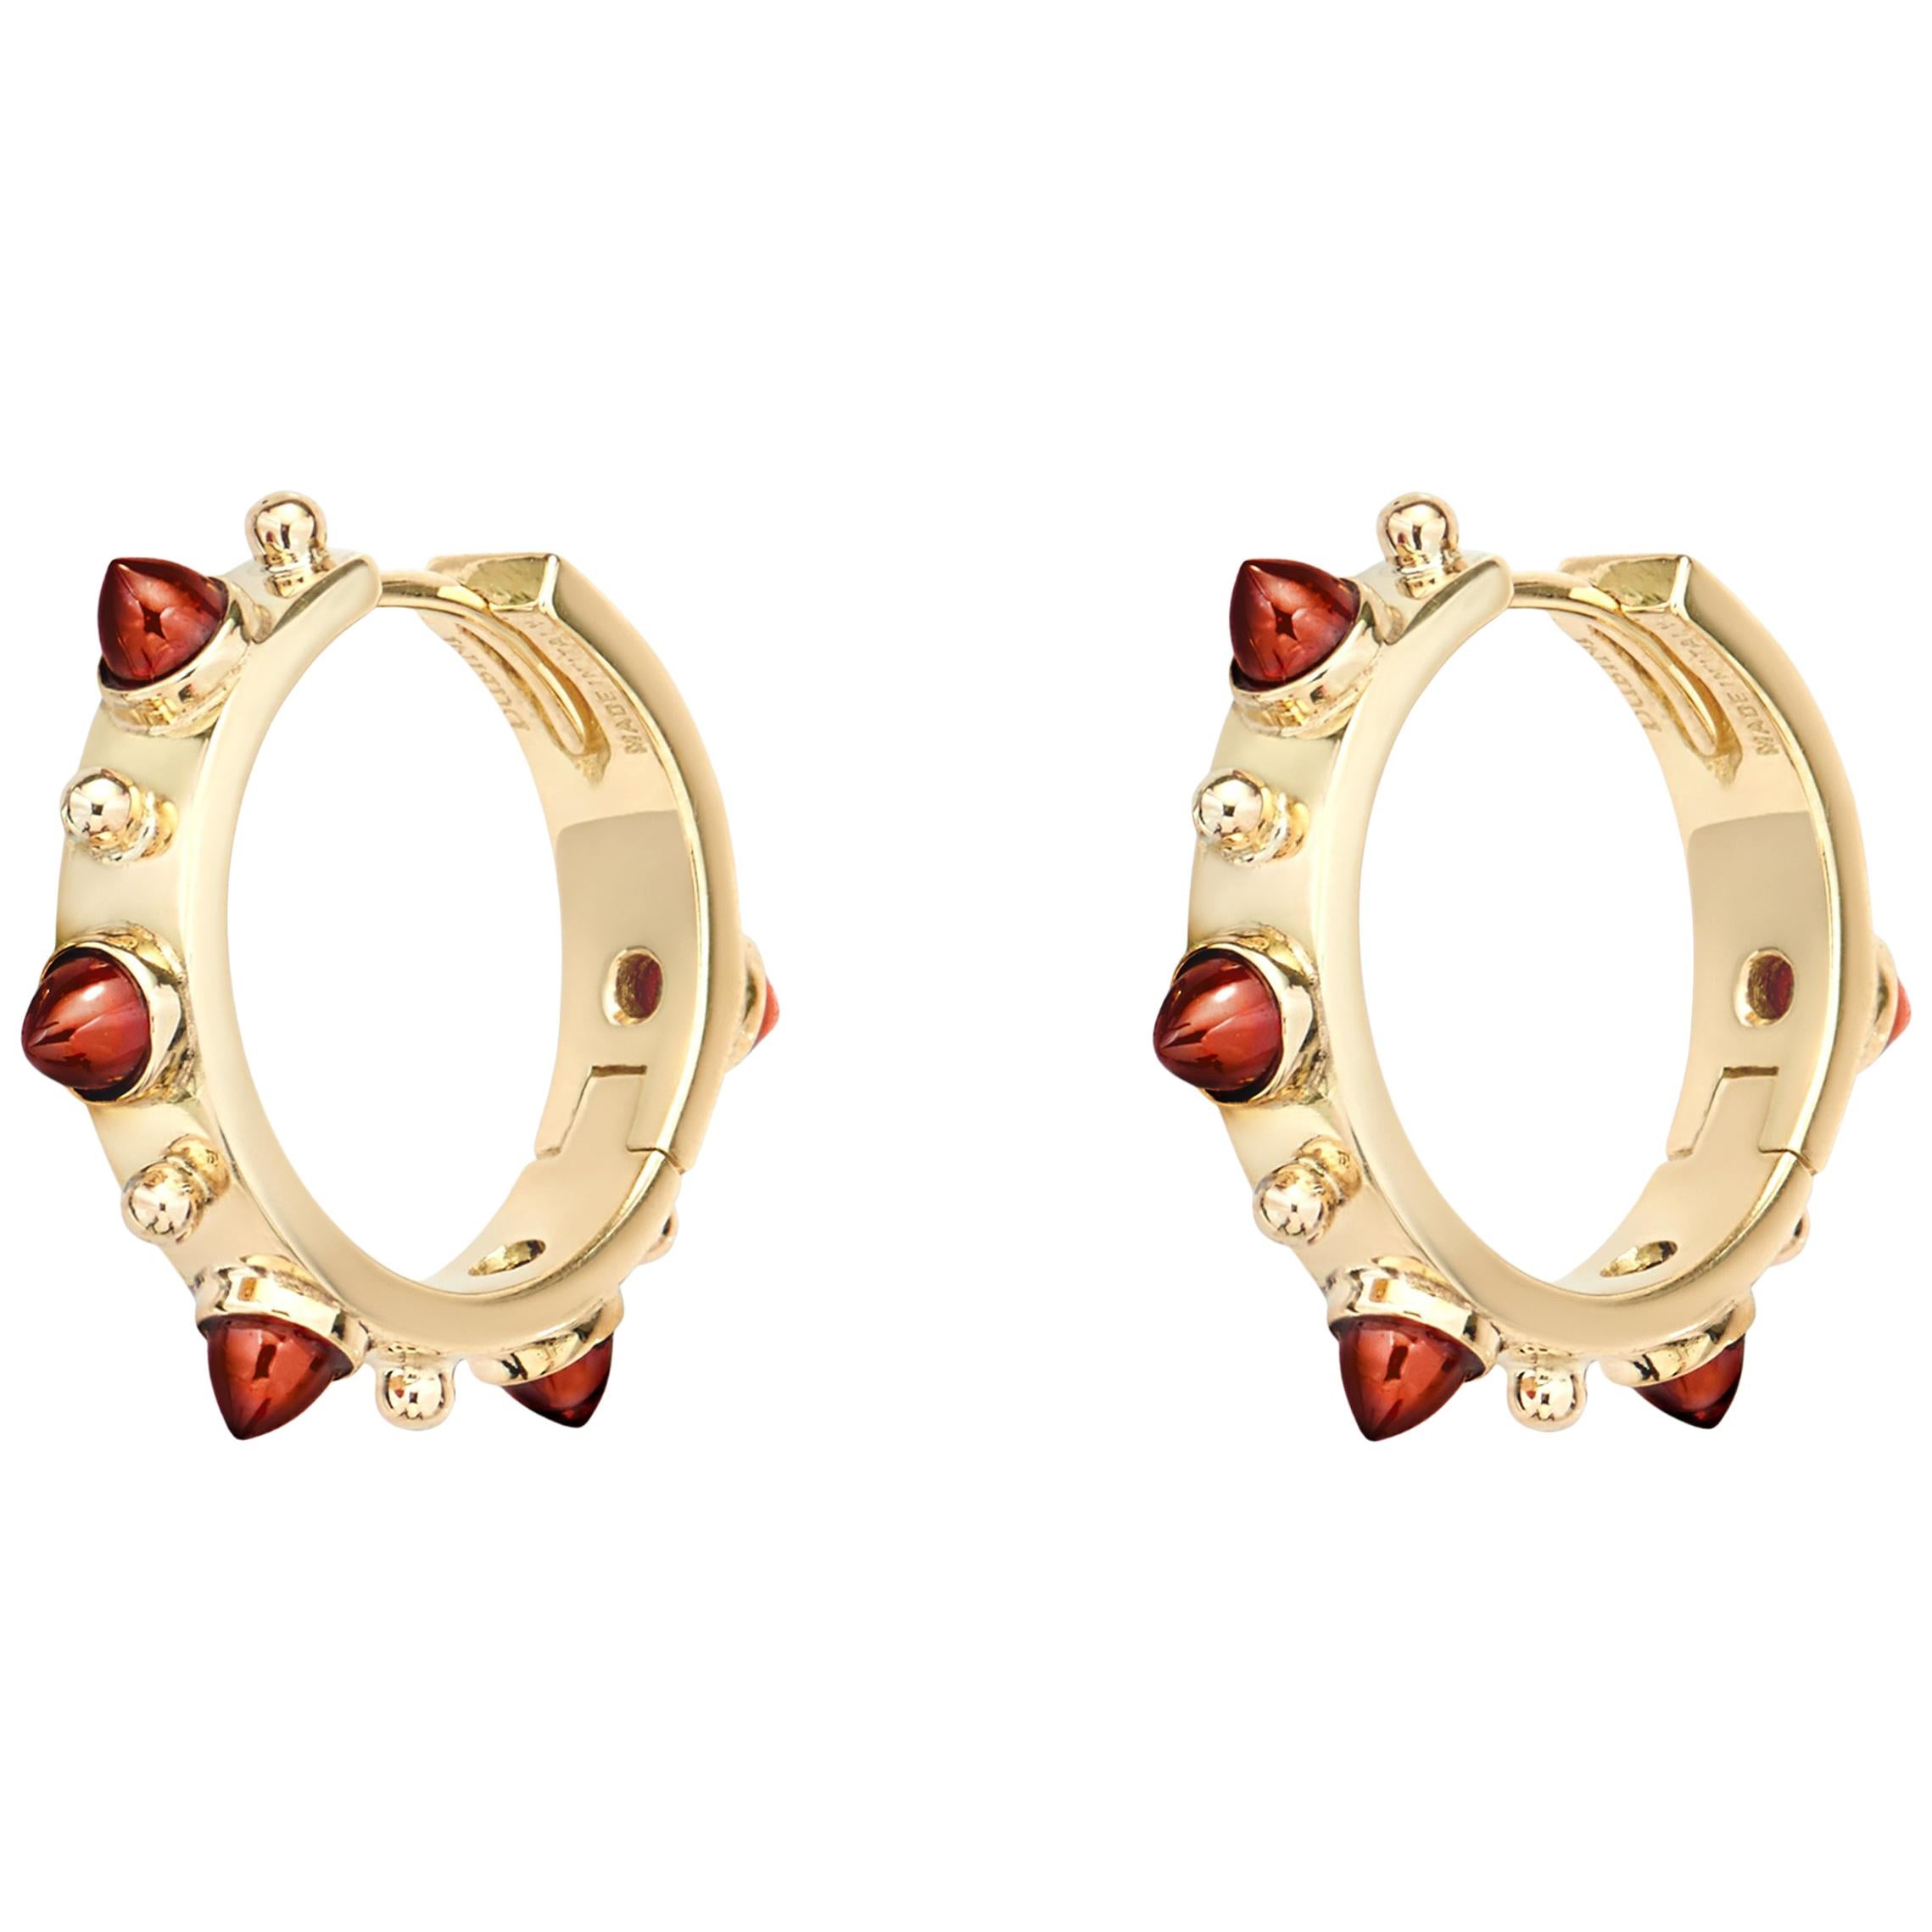 Dubini Punta di Diamante Cabochon Garnet 18 Karat Gold Small Hoop Earrings For Sale